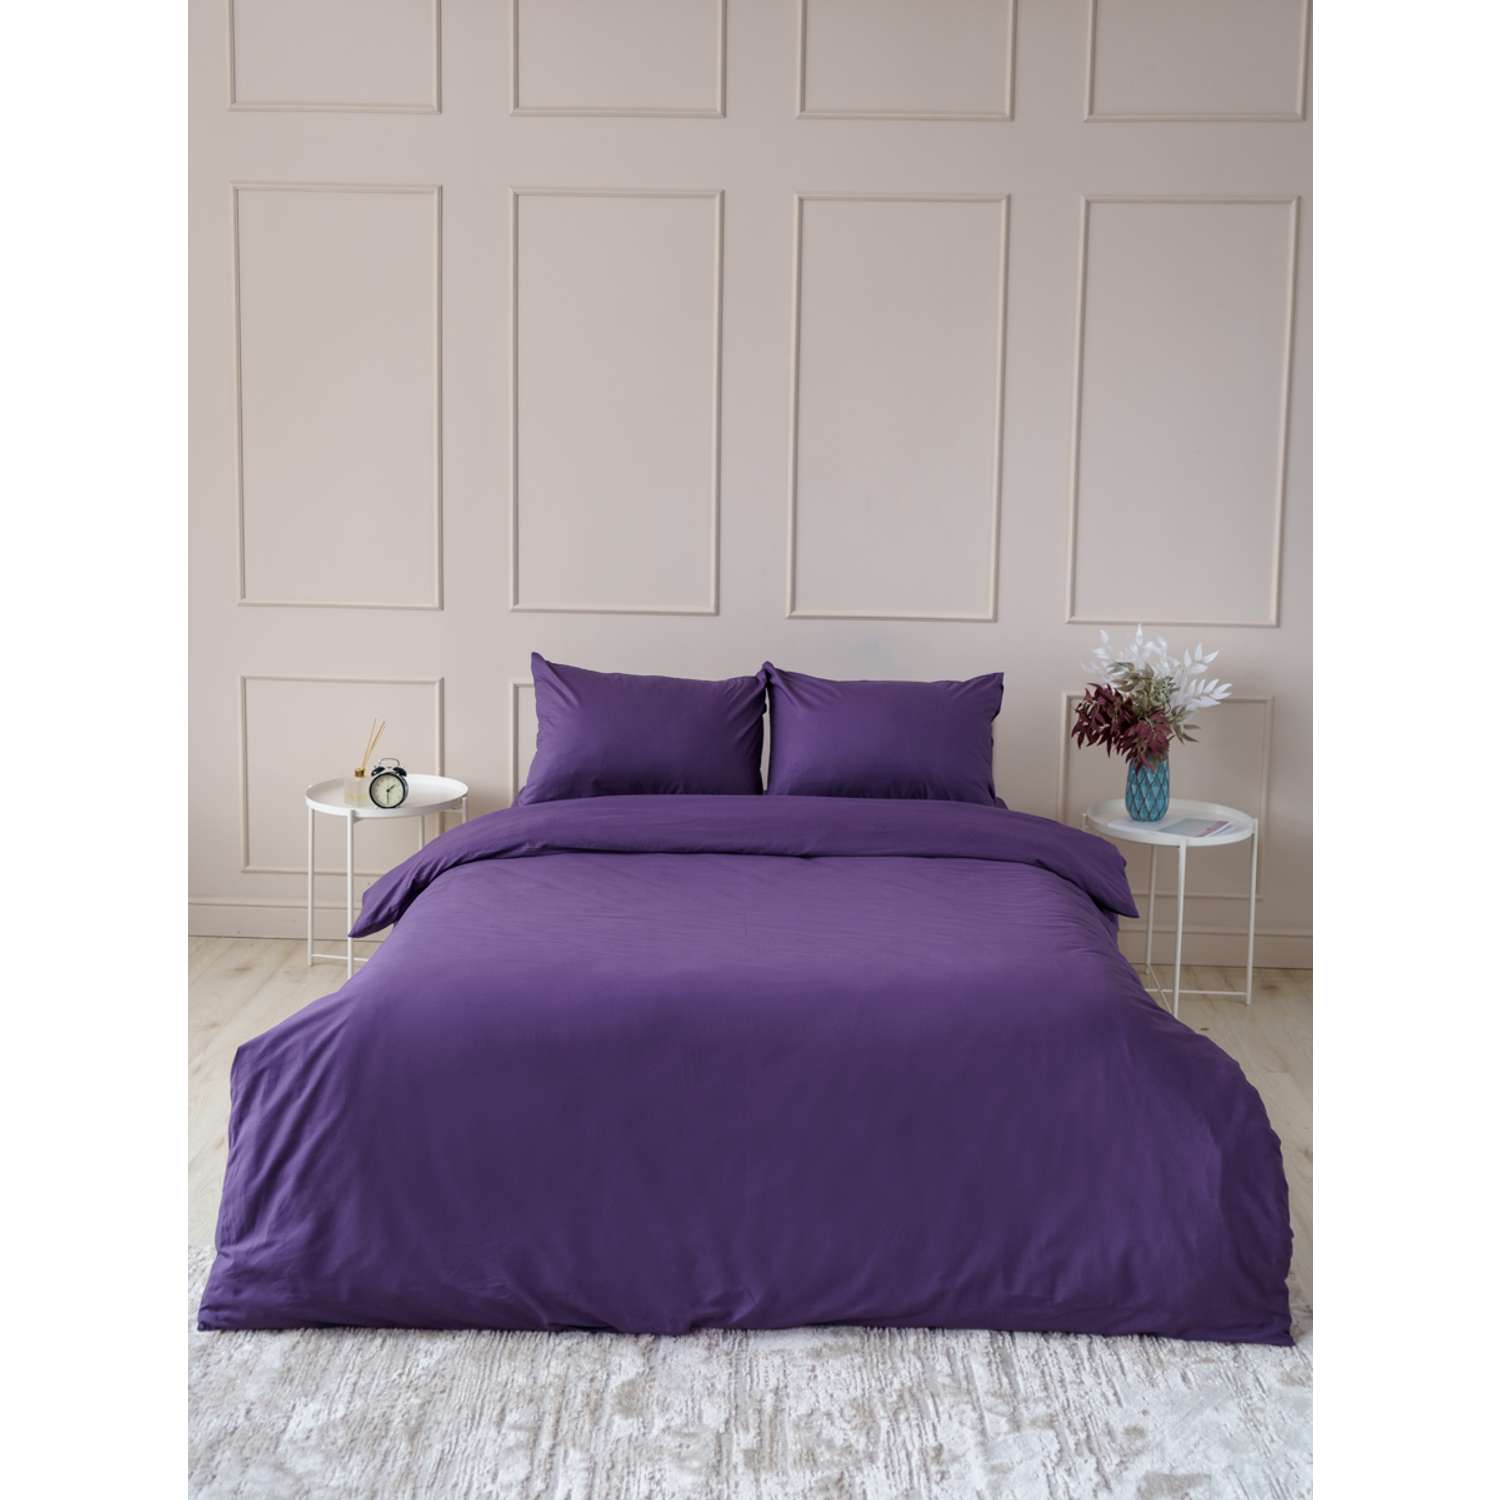 Комплект постельного белья IDEASON поплин 3 предмета Евро фиолетовый - фото 1